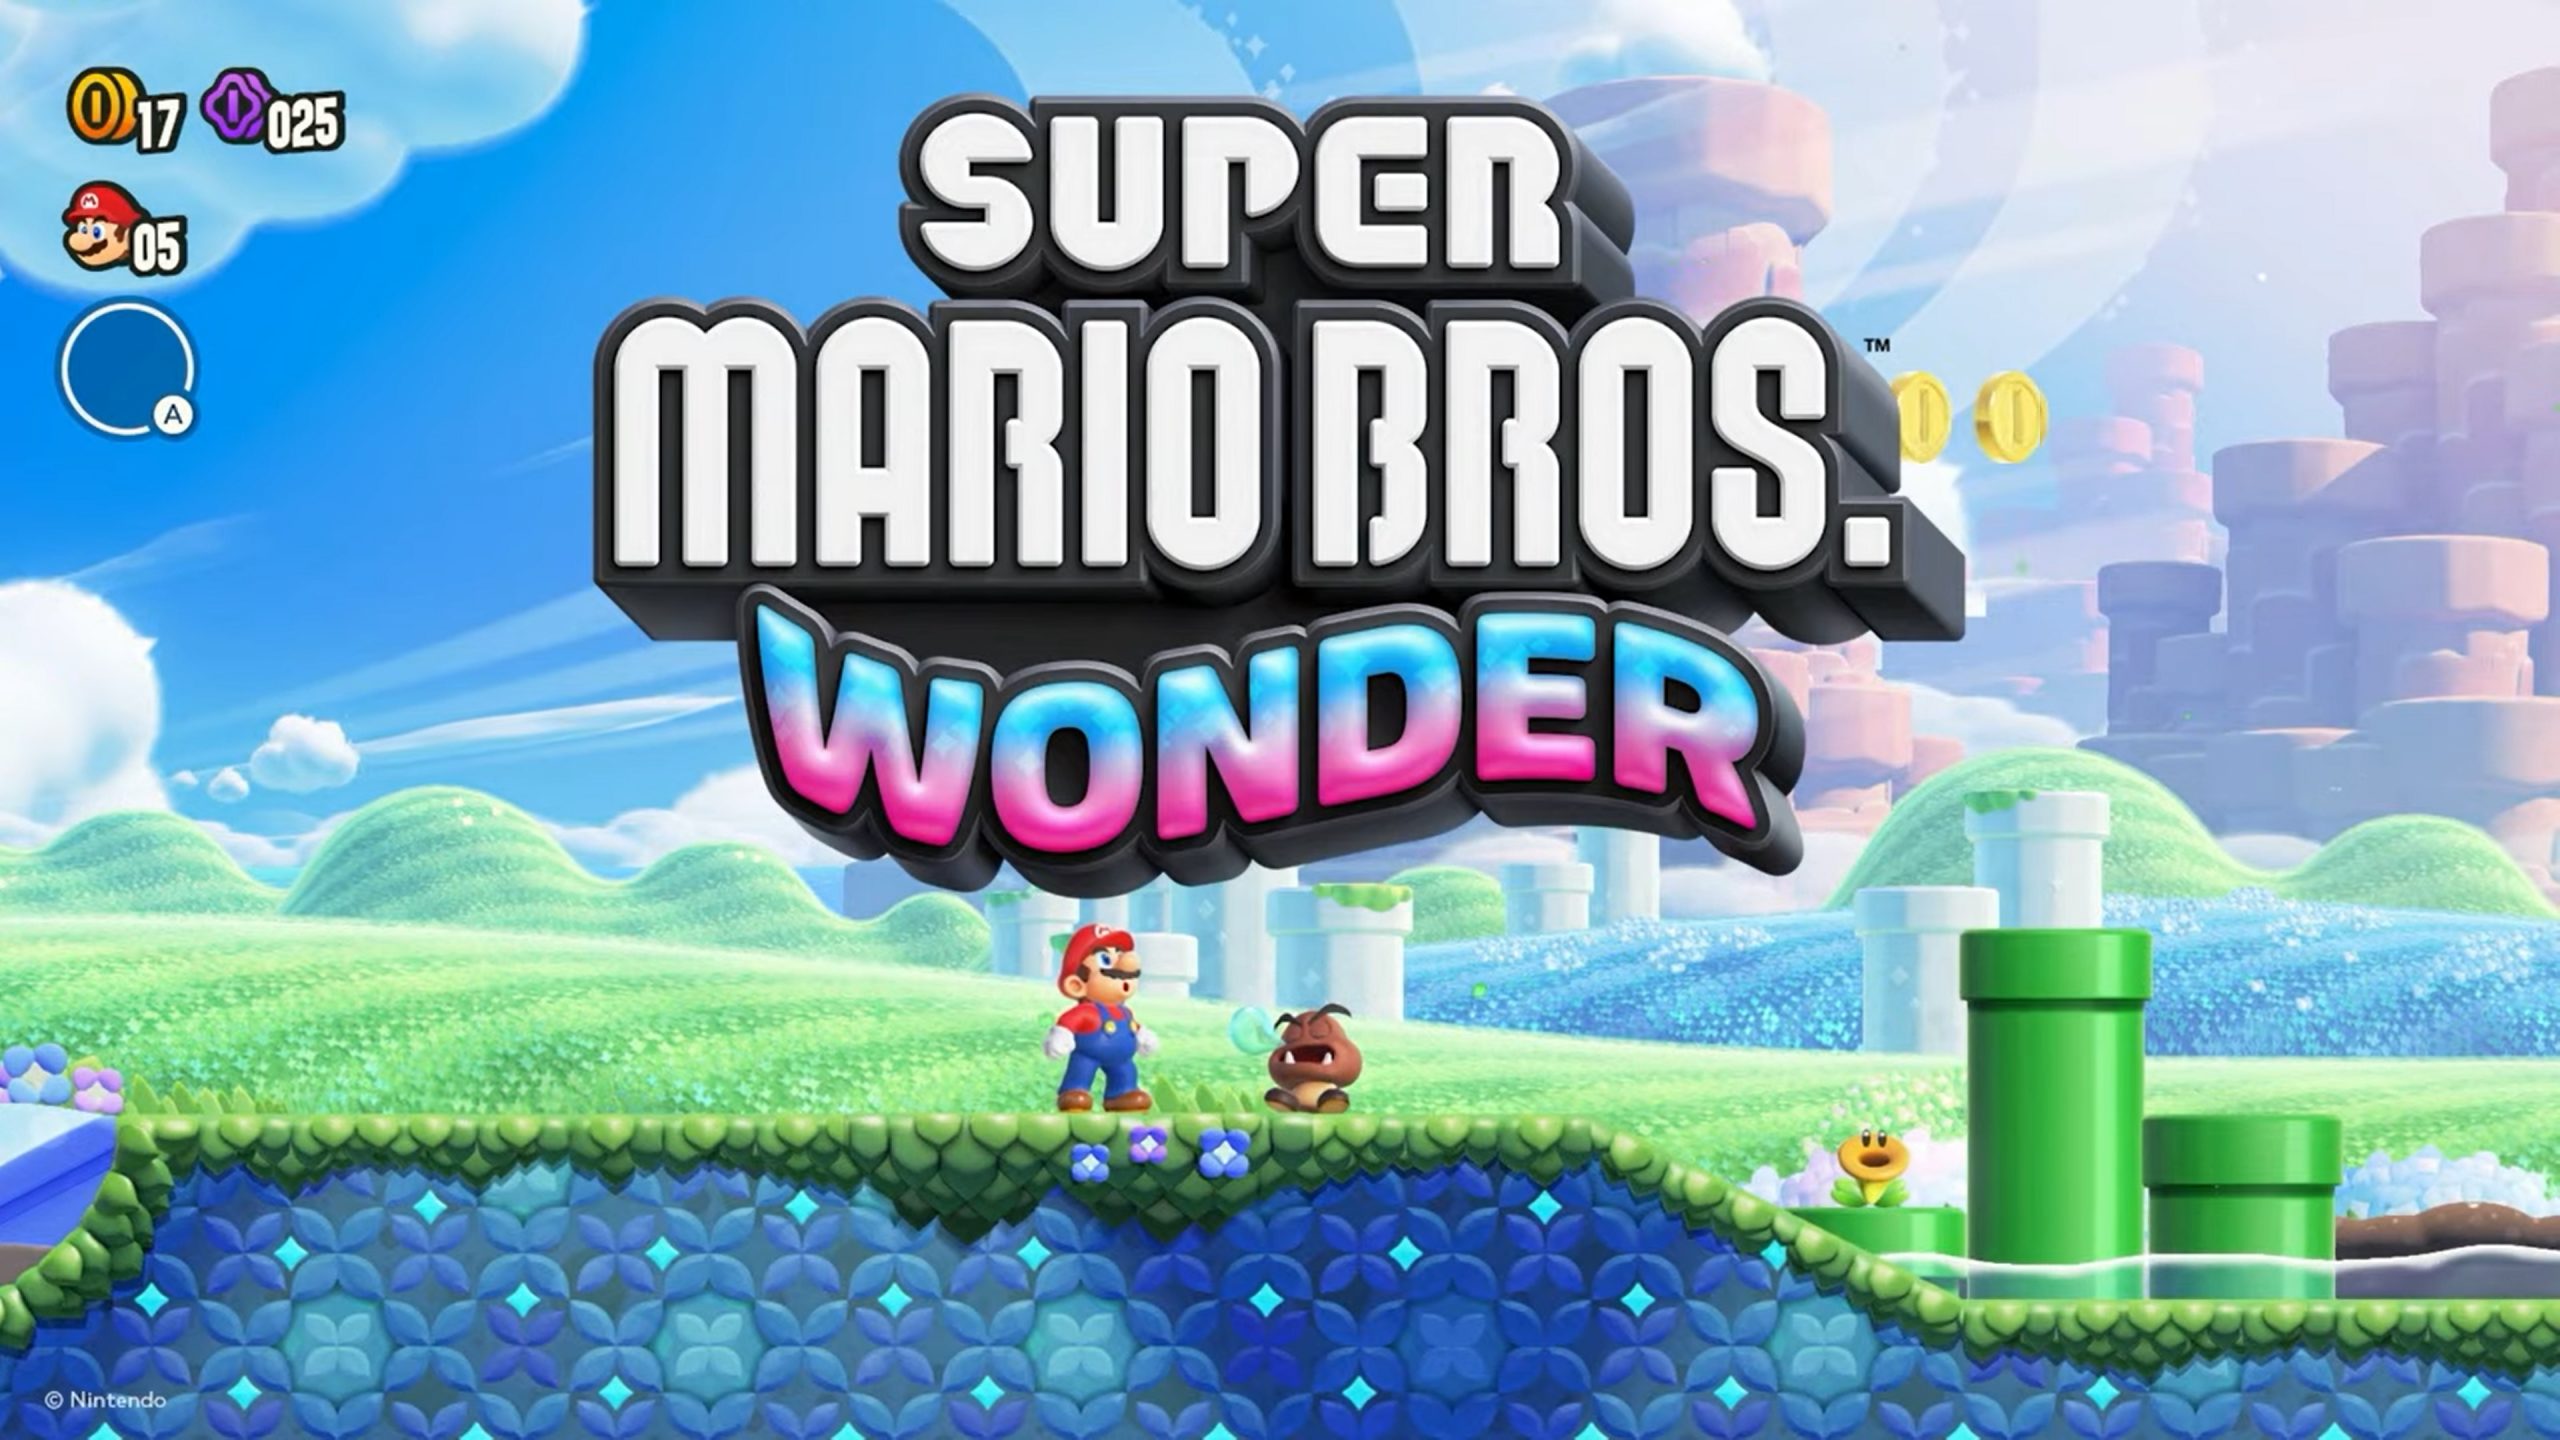 Die Zahl der in Japan verkauften physischen Exemplare von Super Mario Bros. Wonder belief sich auf über 638 Tausend. Das Spiel belegte den ersten Platz in den Charts